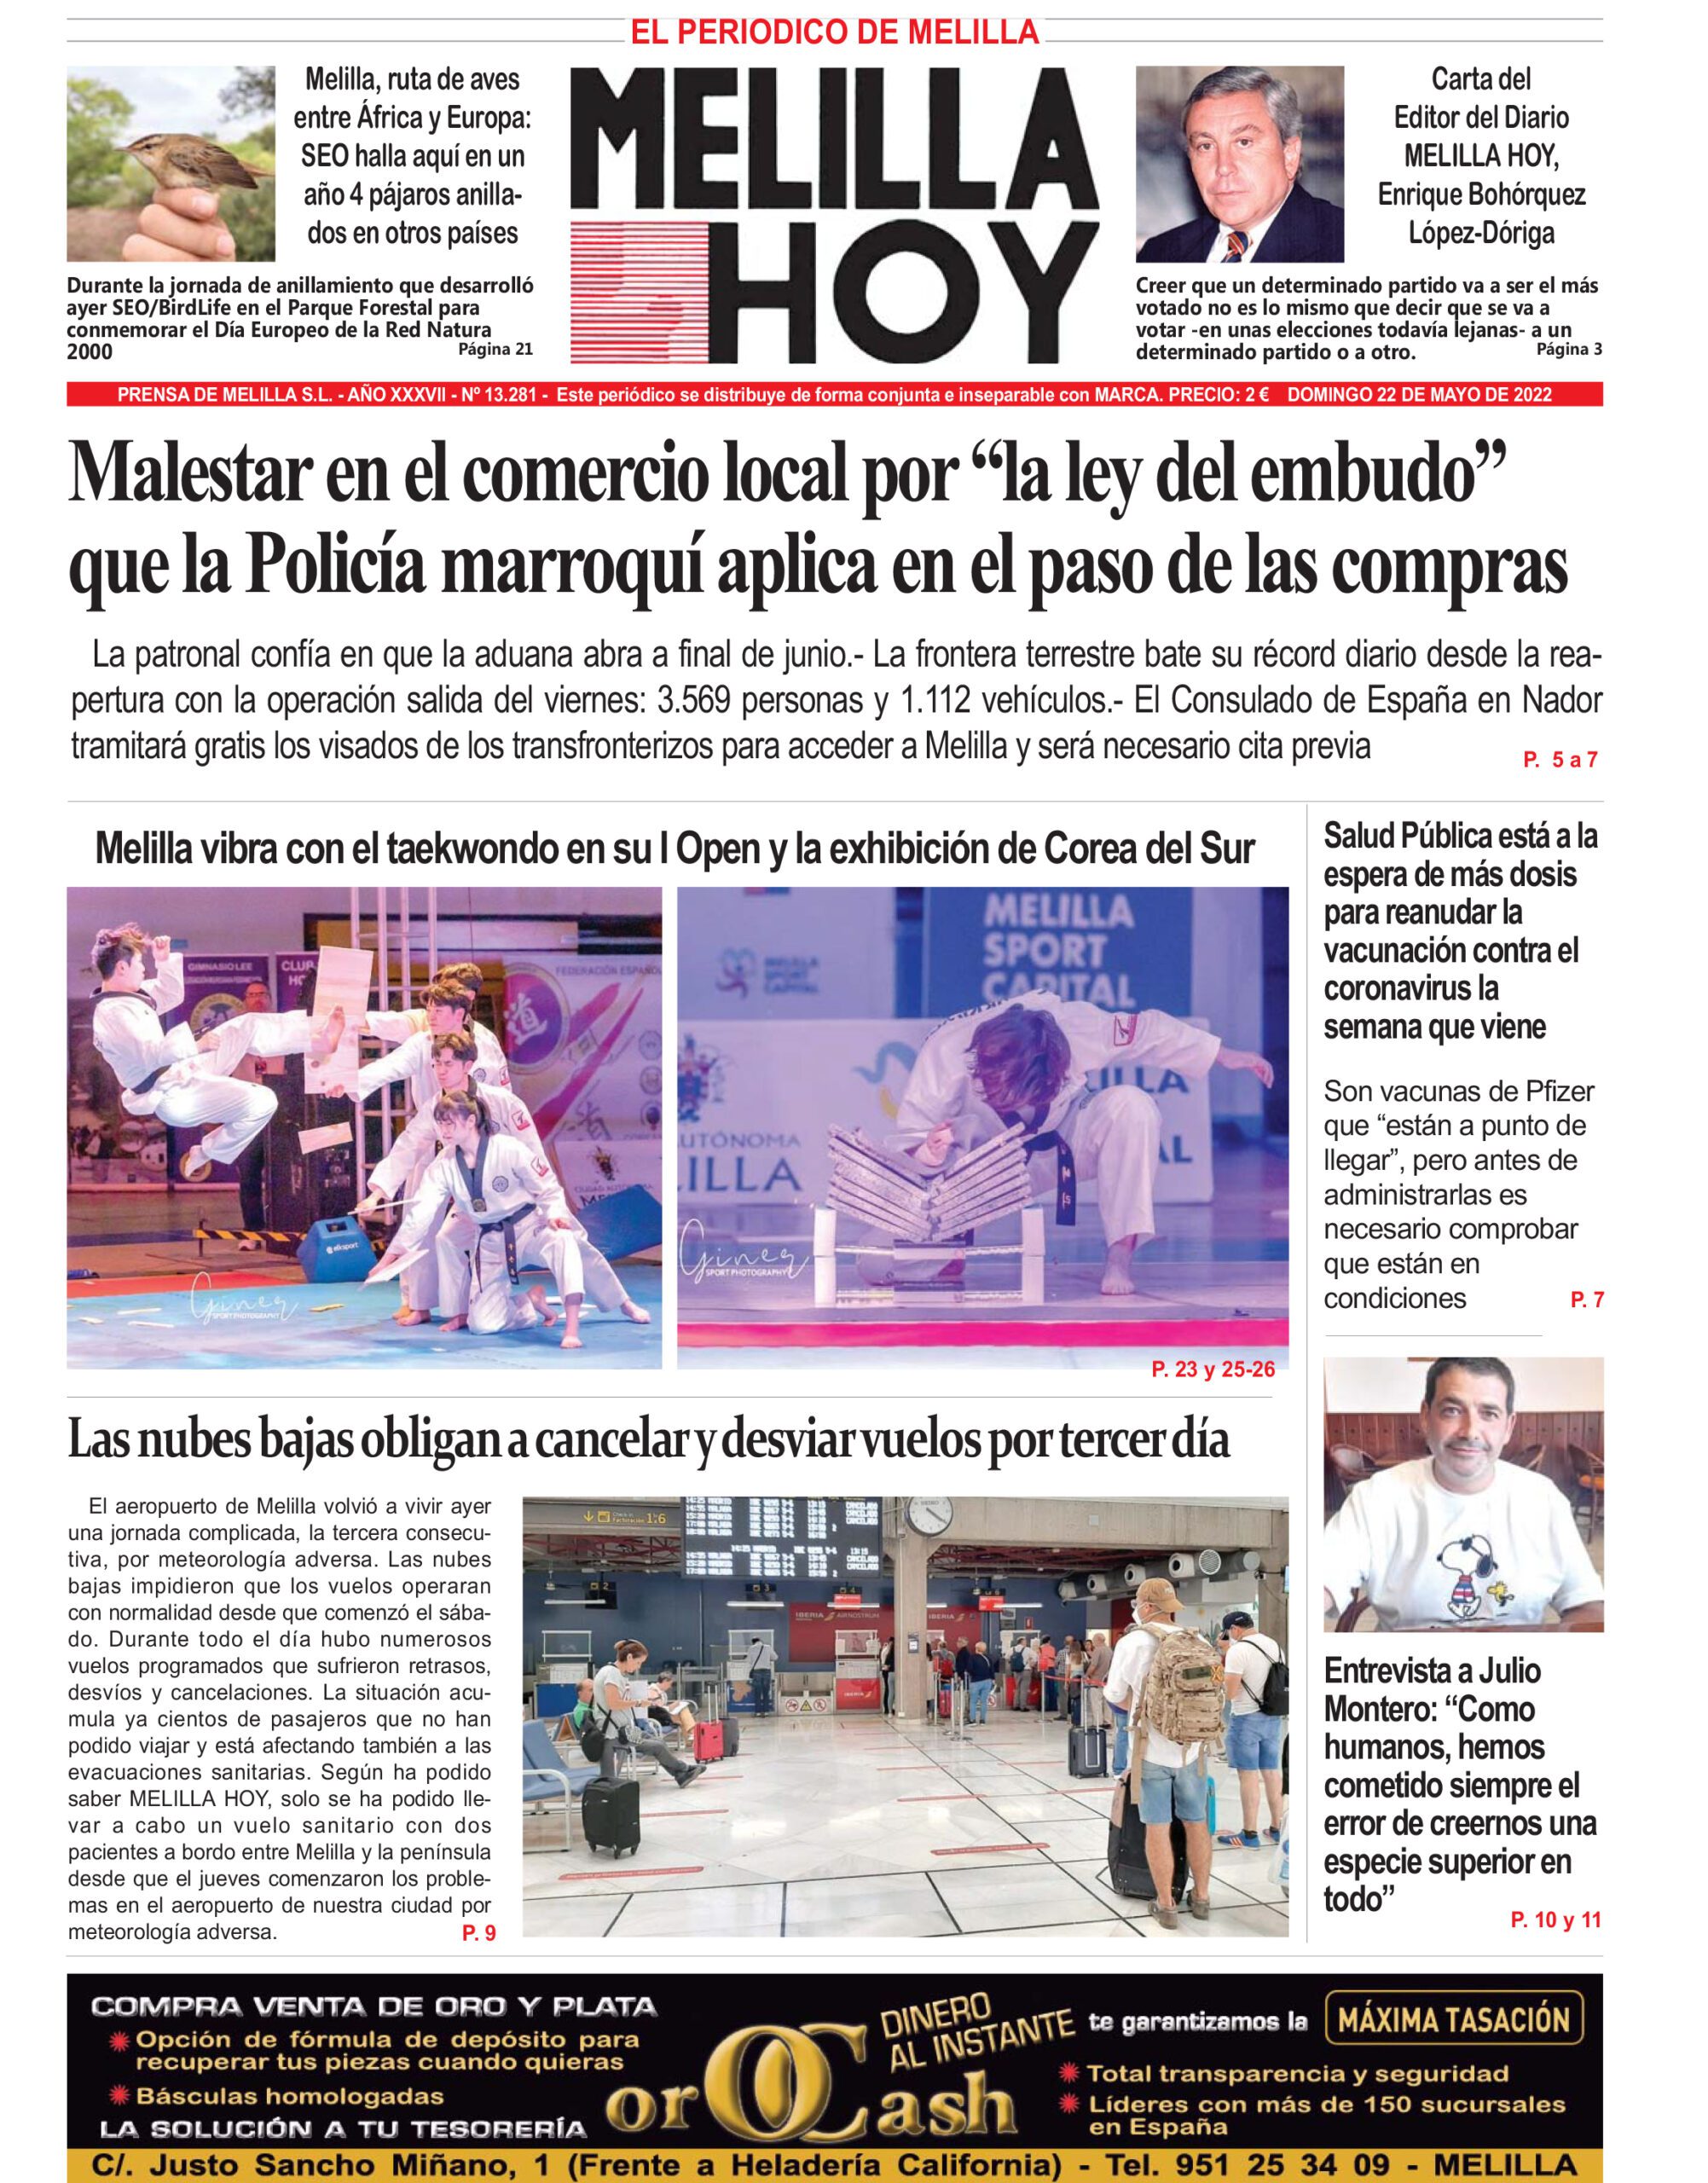 Consulte la portada de MELILLA HOY del DOMINGO 22 de mayo de 2022 -  MelillaHoy